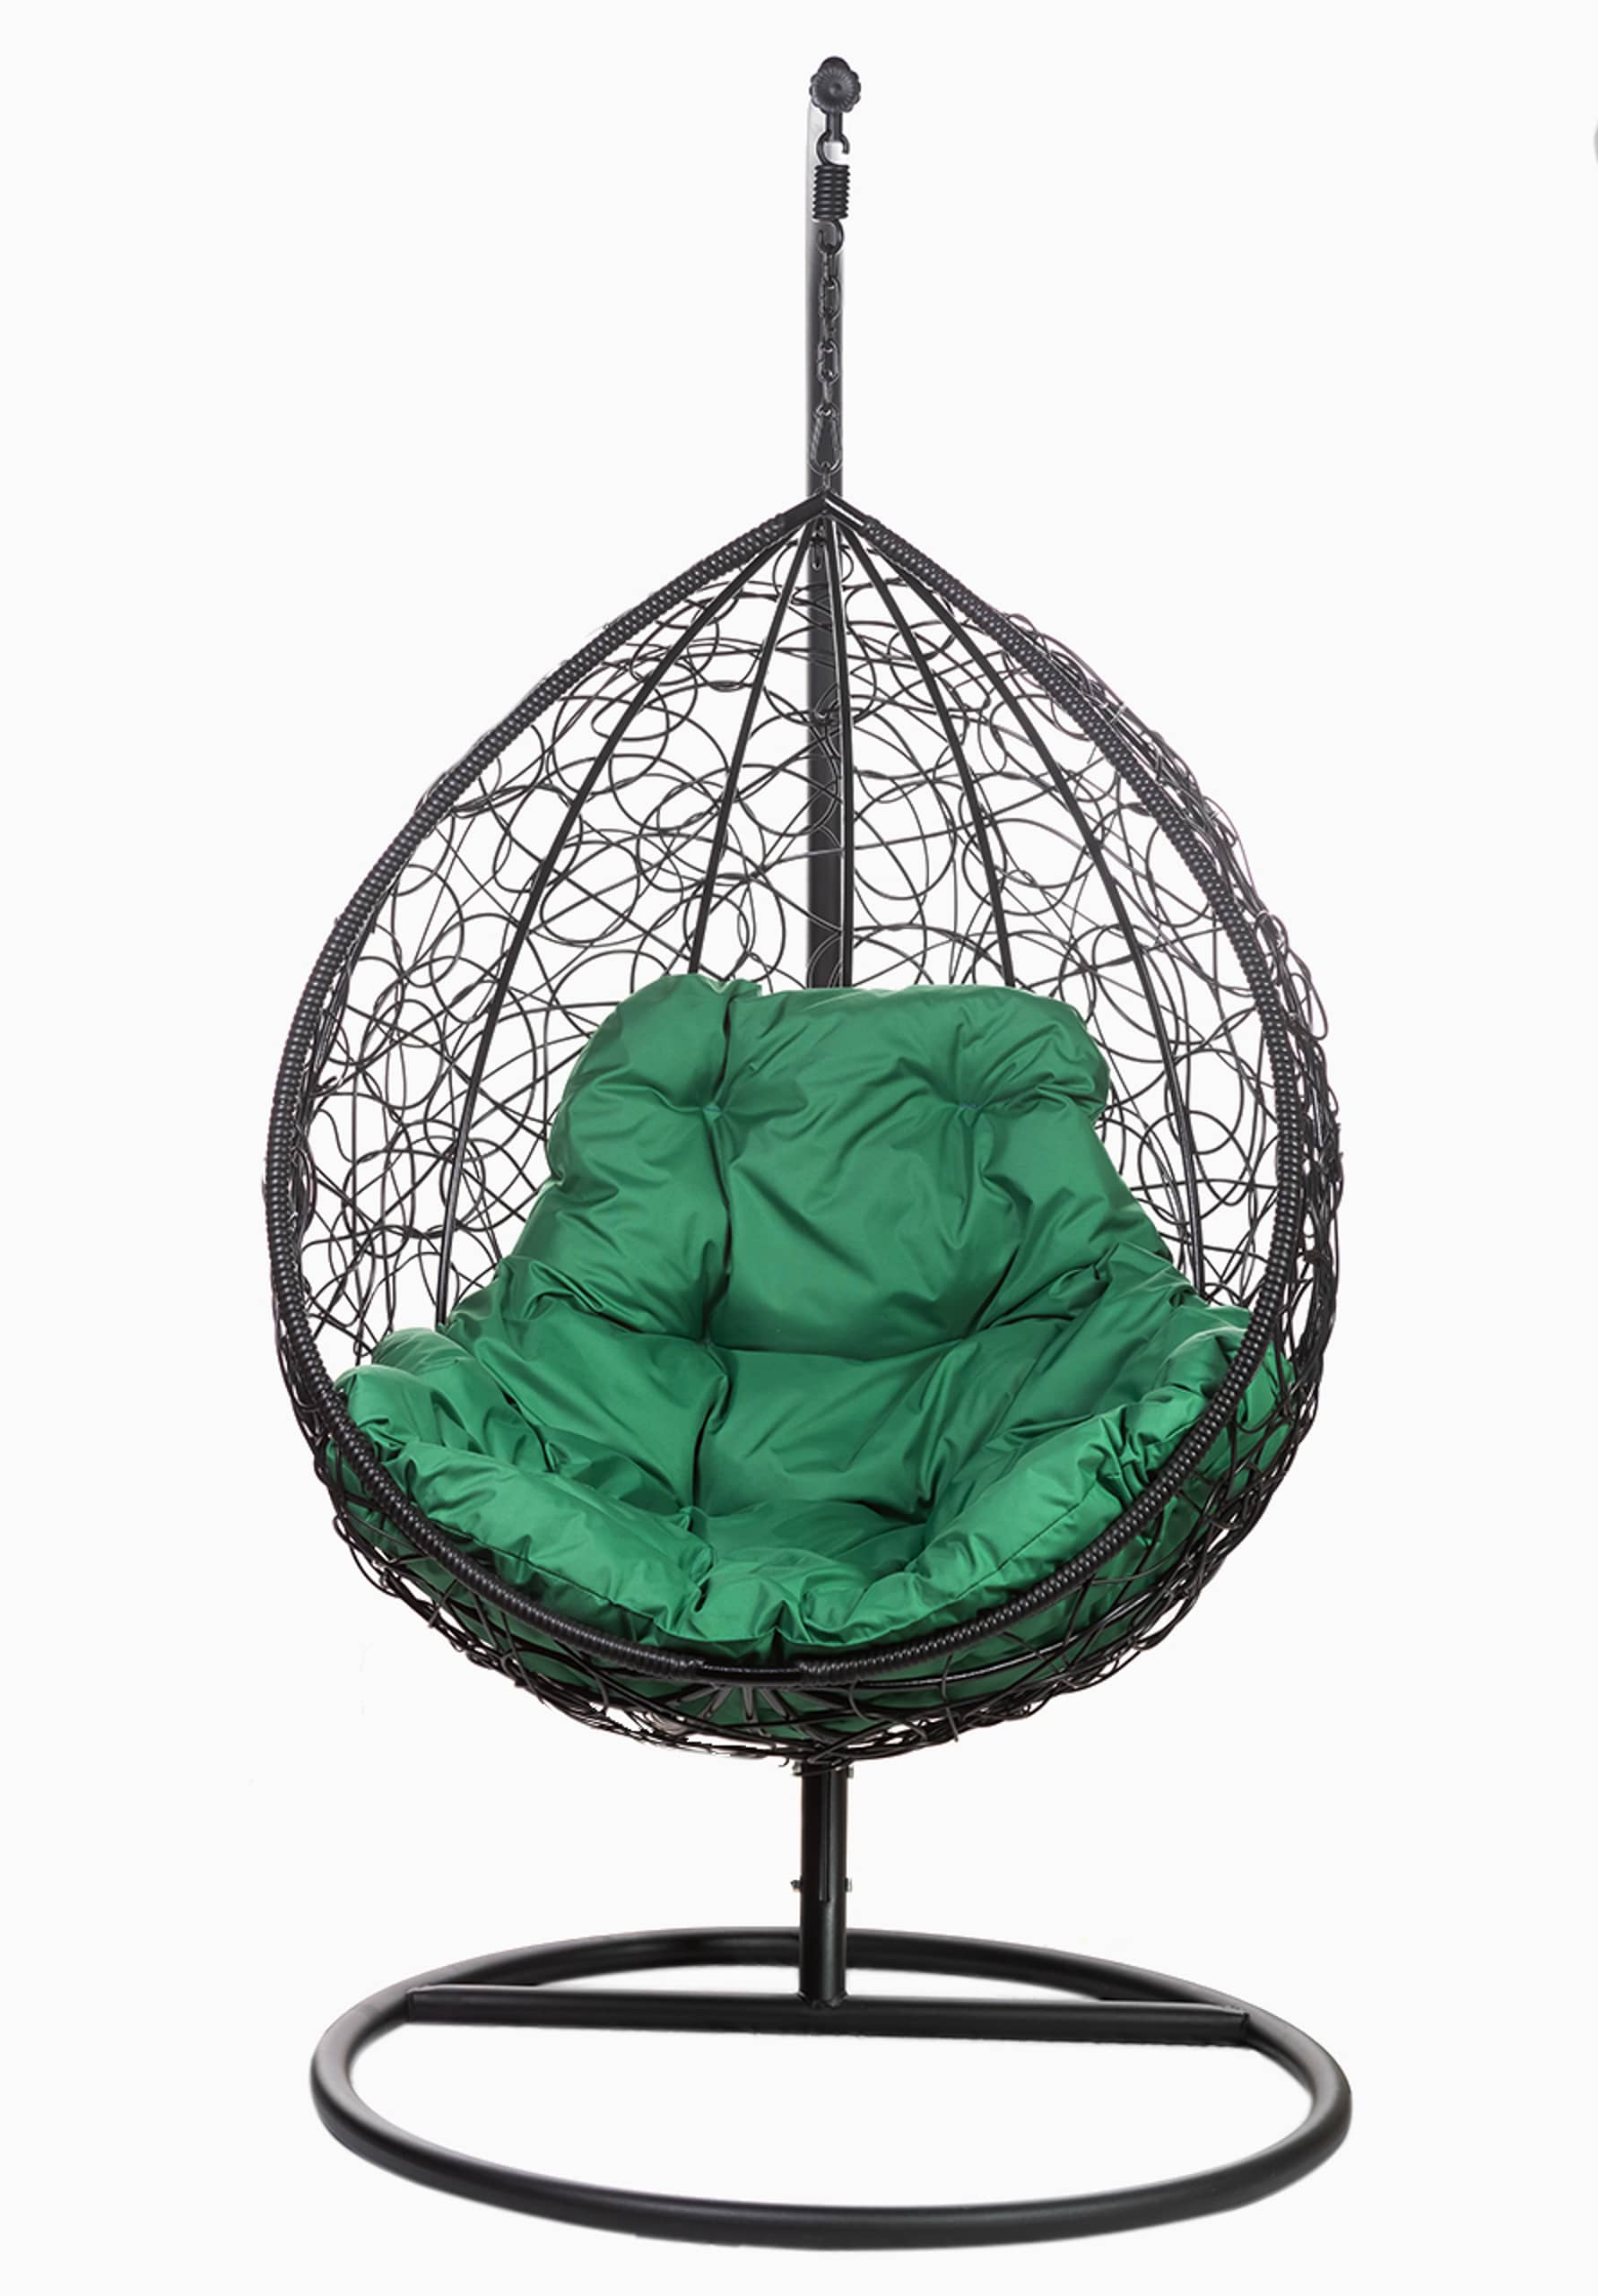 Кресло подвесное FP 0234 зеленая подушка - изображение 1